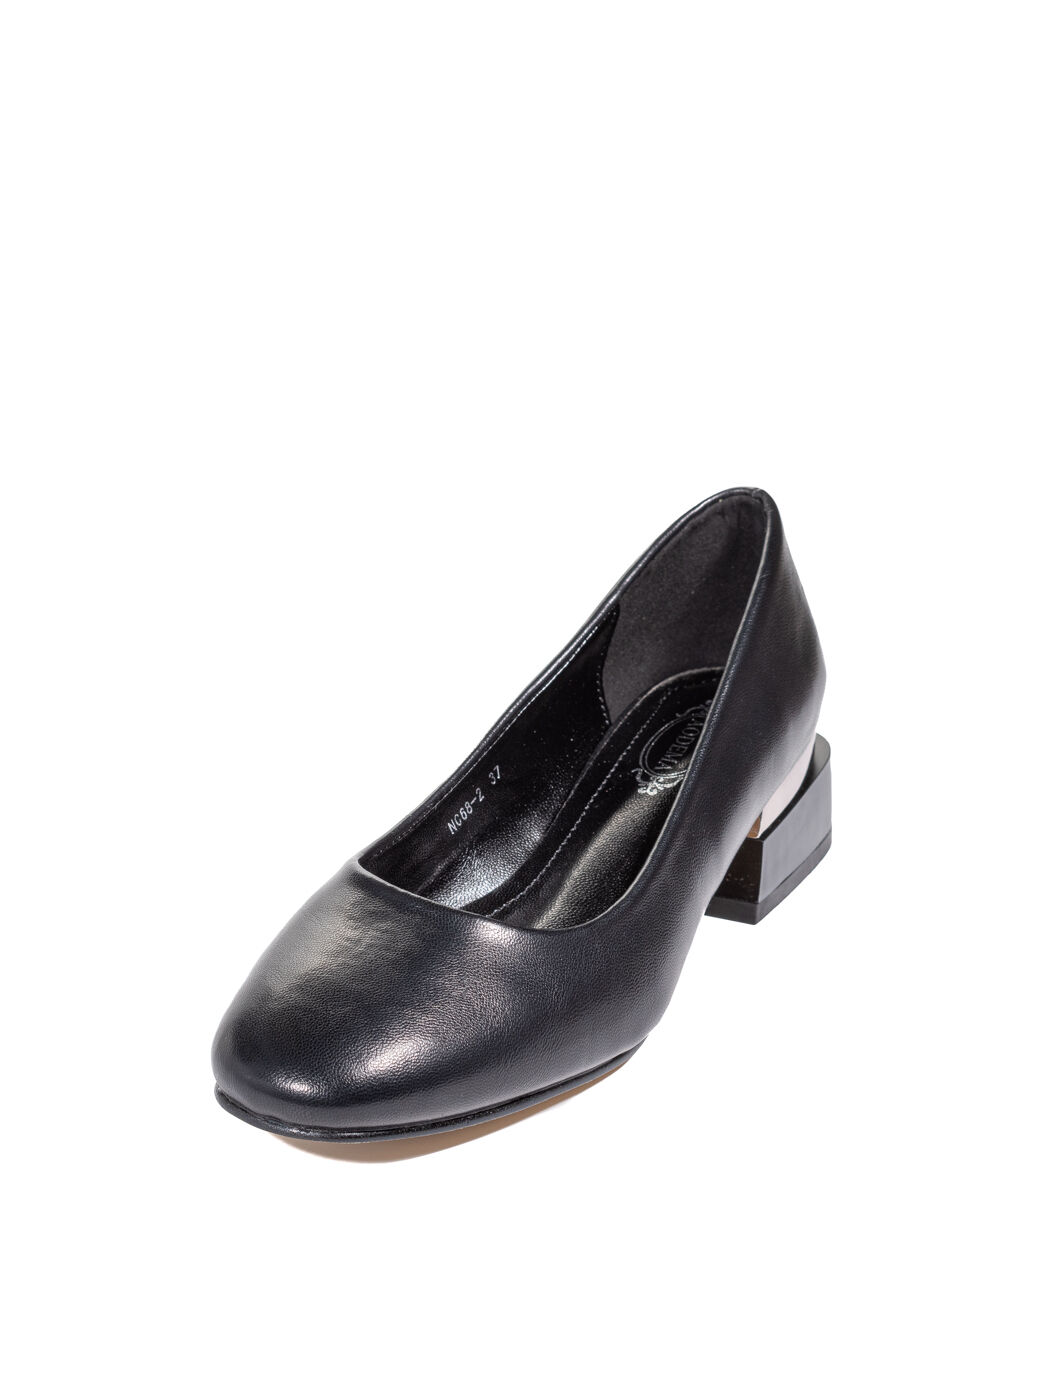 Туфли женские черные экокожа каблук устойчивый демисезон от производителя 2M вид 1